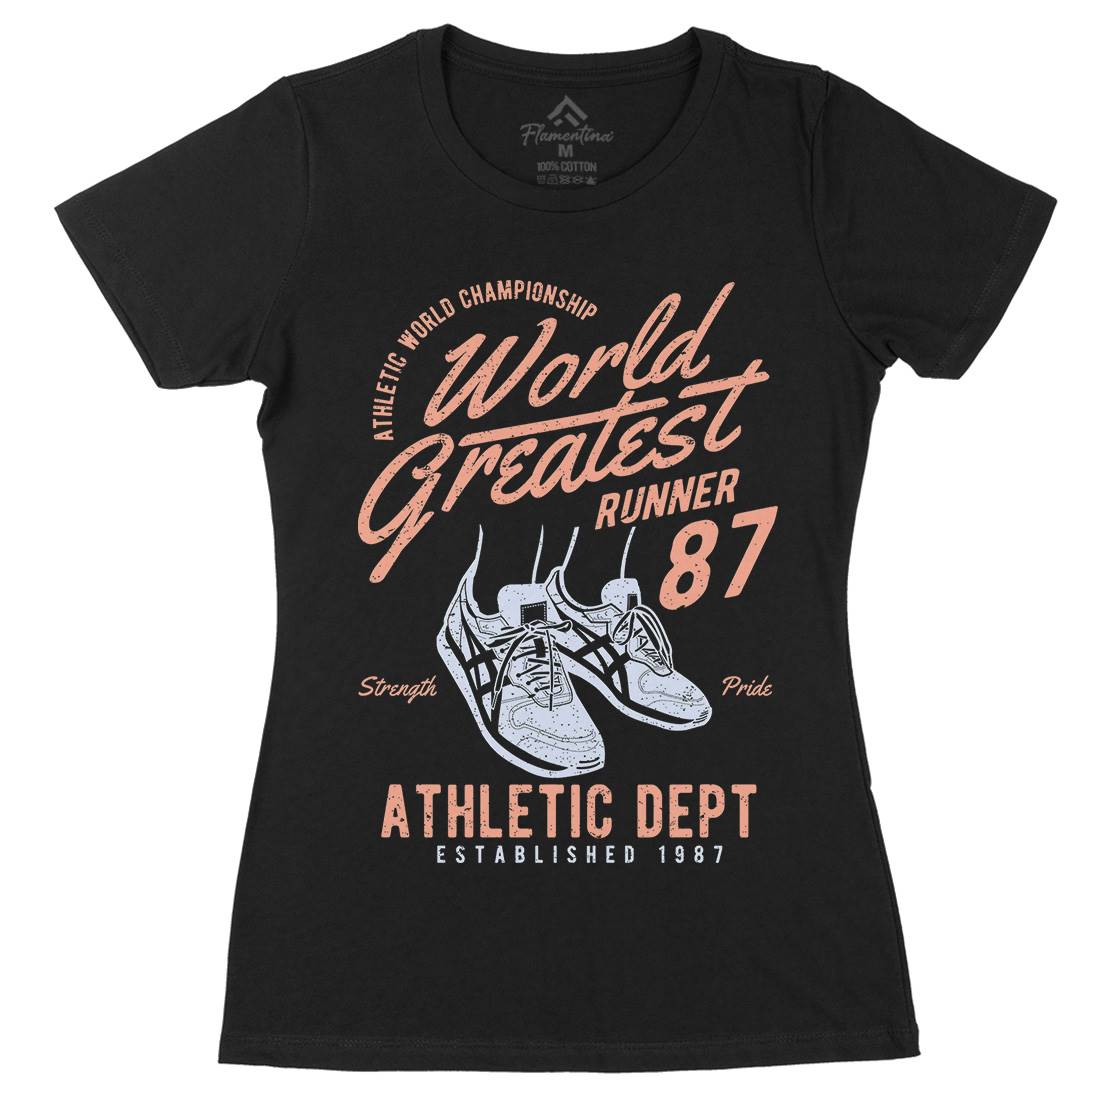 World Greatest Runner Womens Organic Crew Neck T-Shirt Sport A200